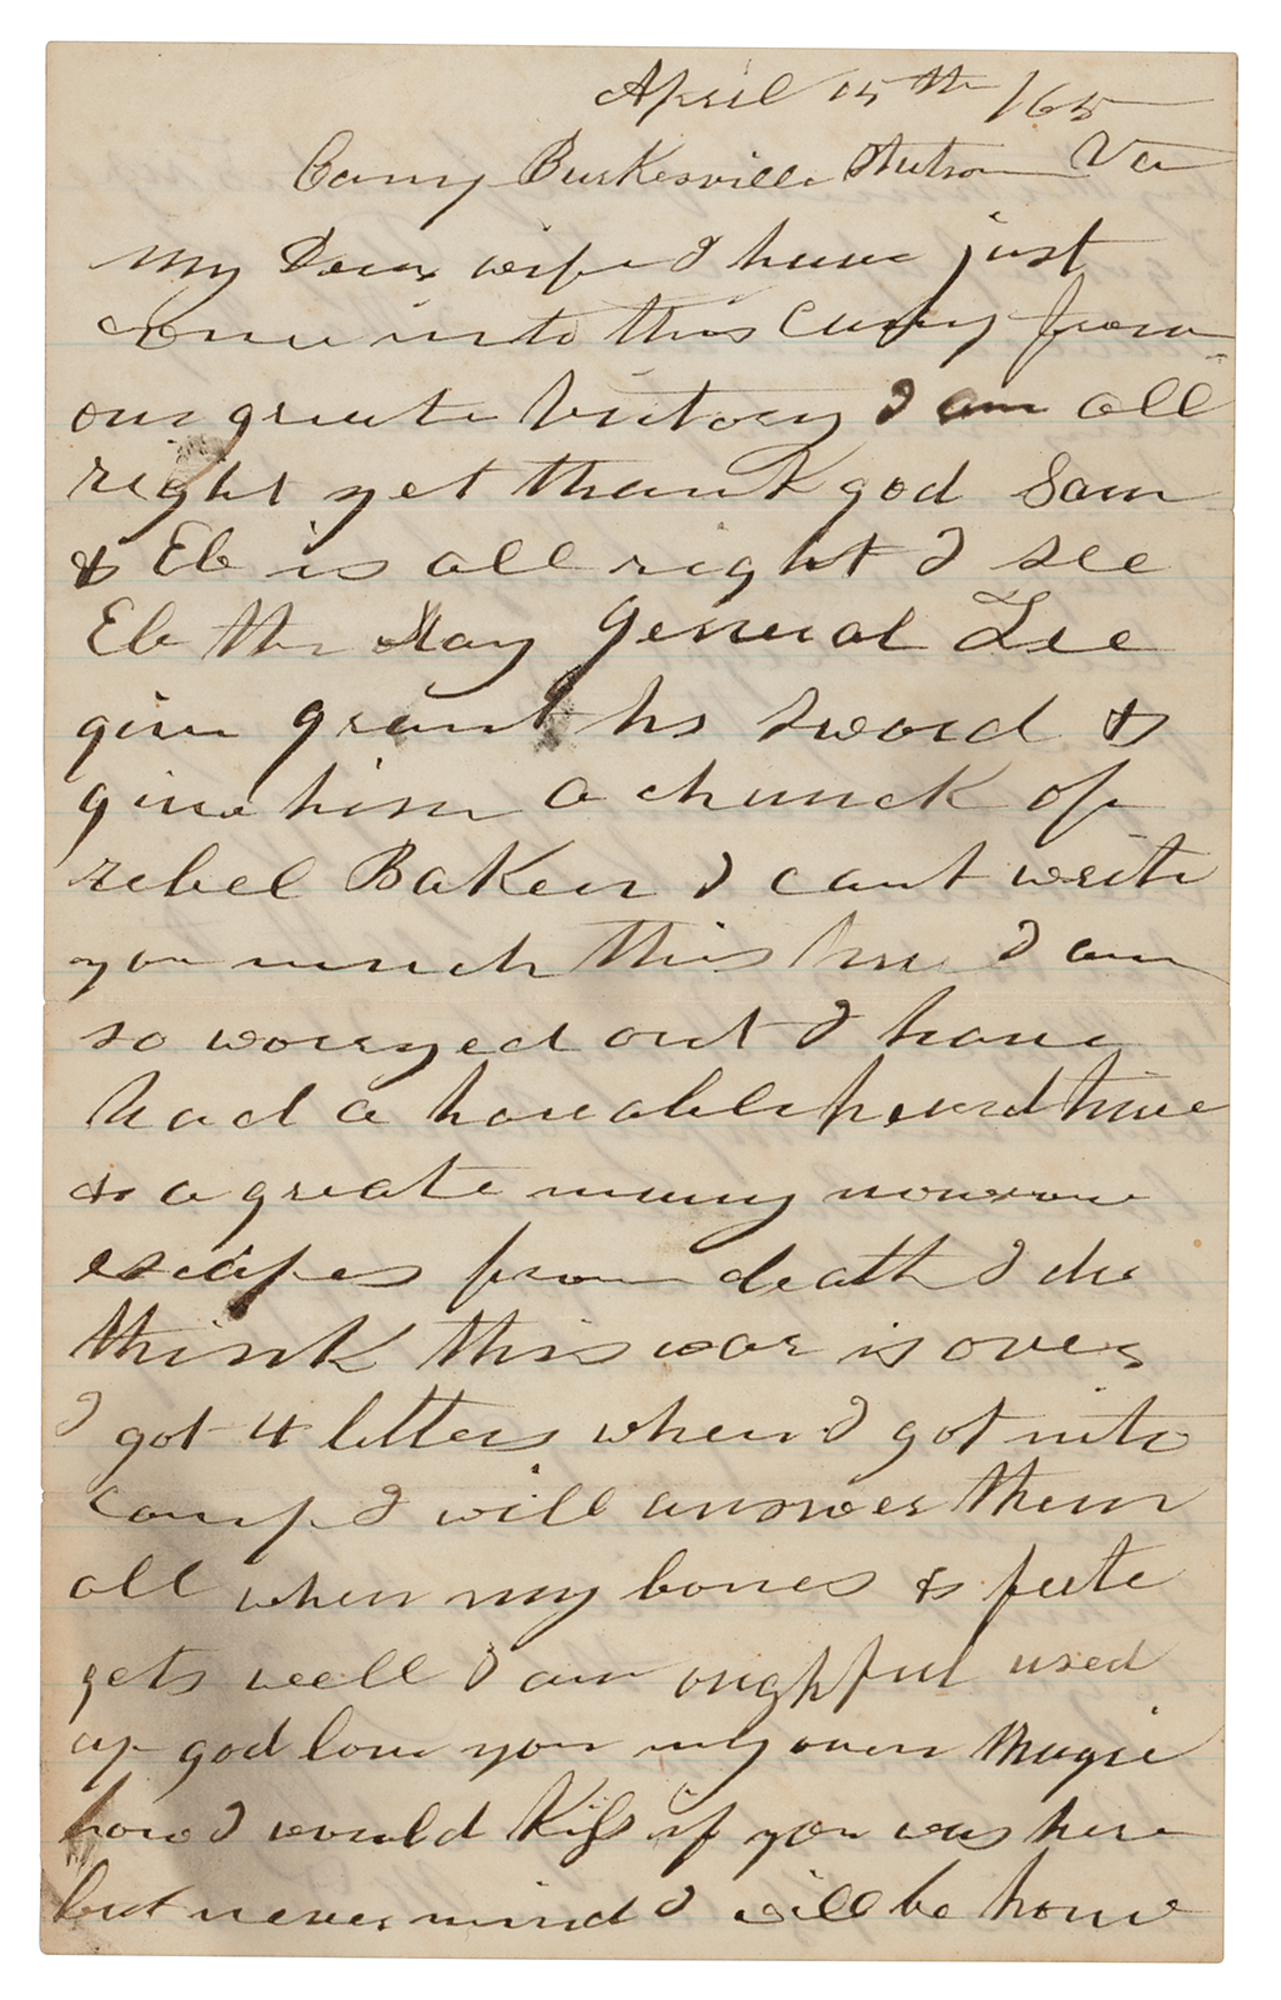 Lot #233 Civil War Soldier's Letter